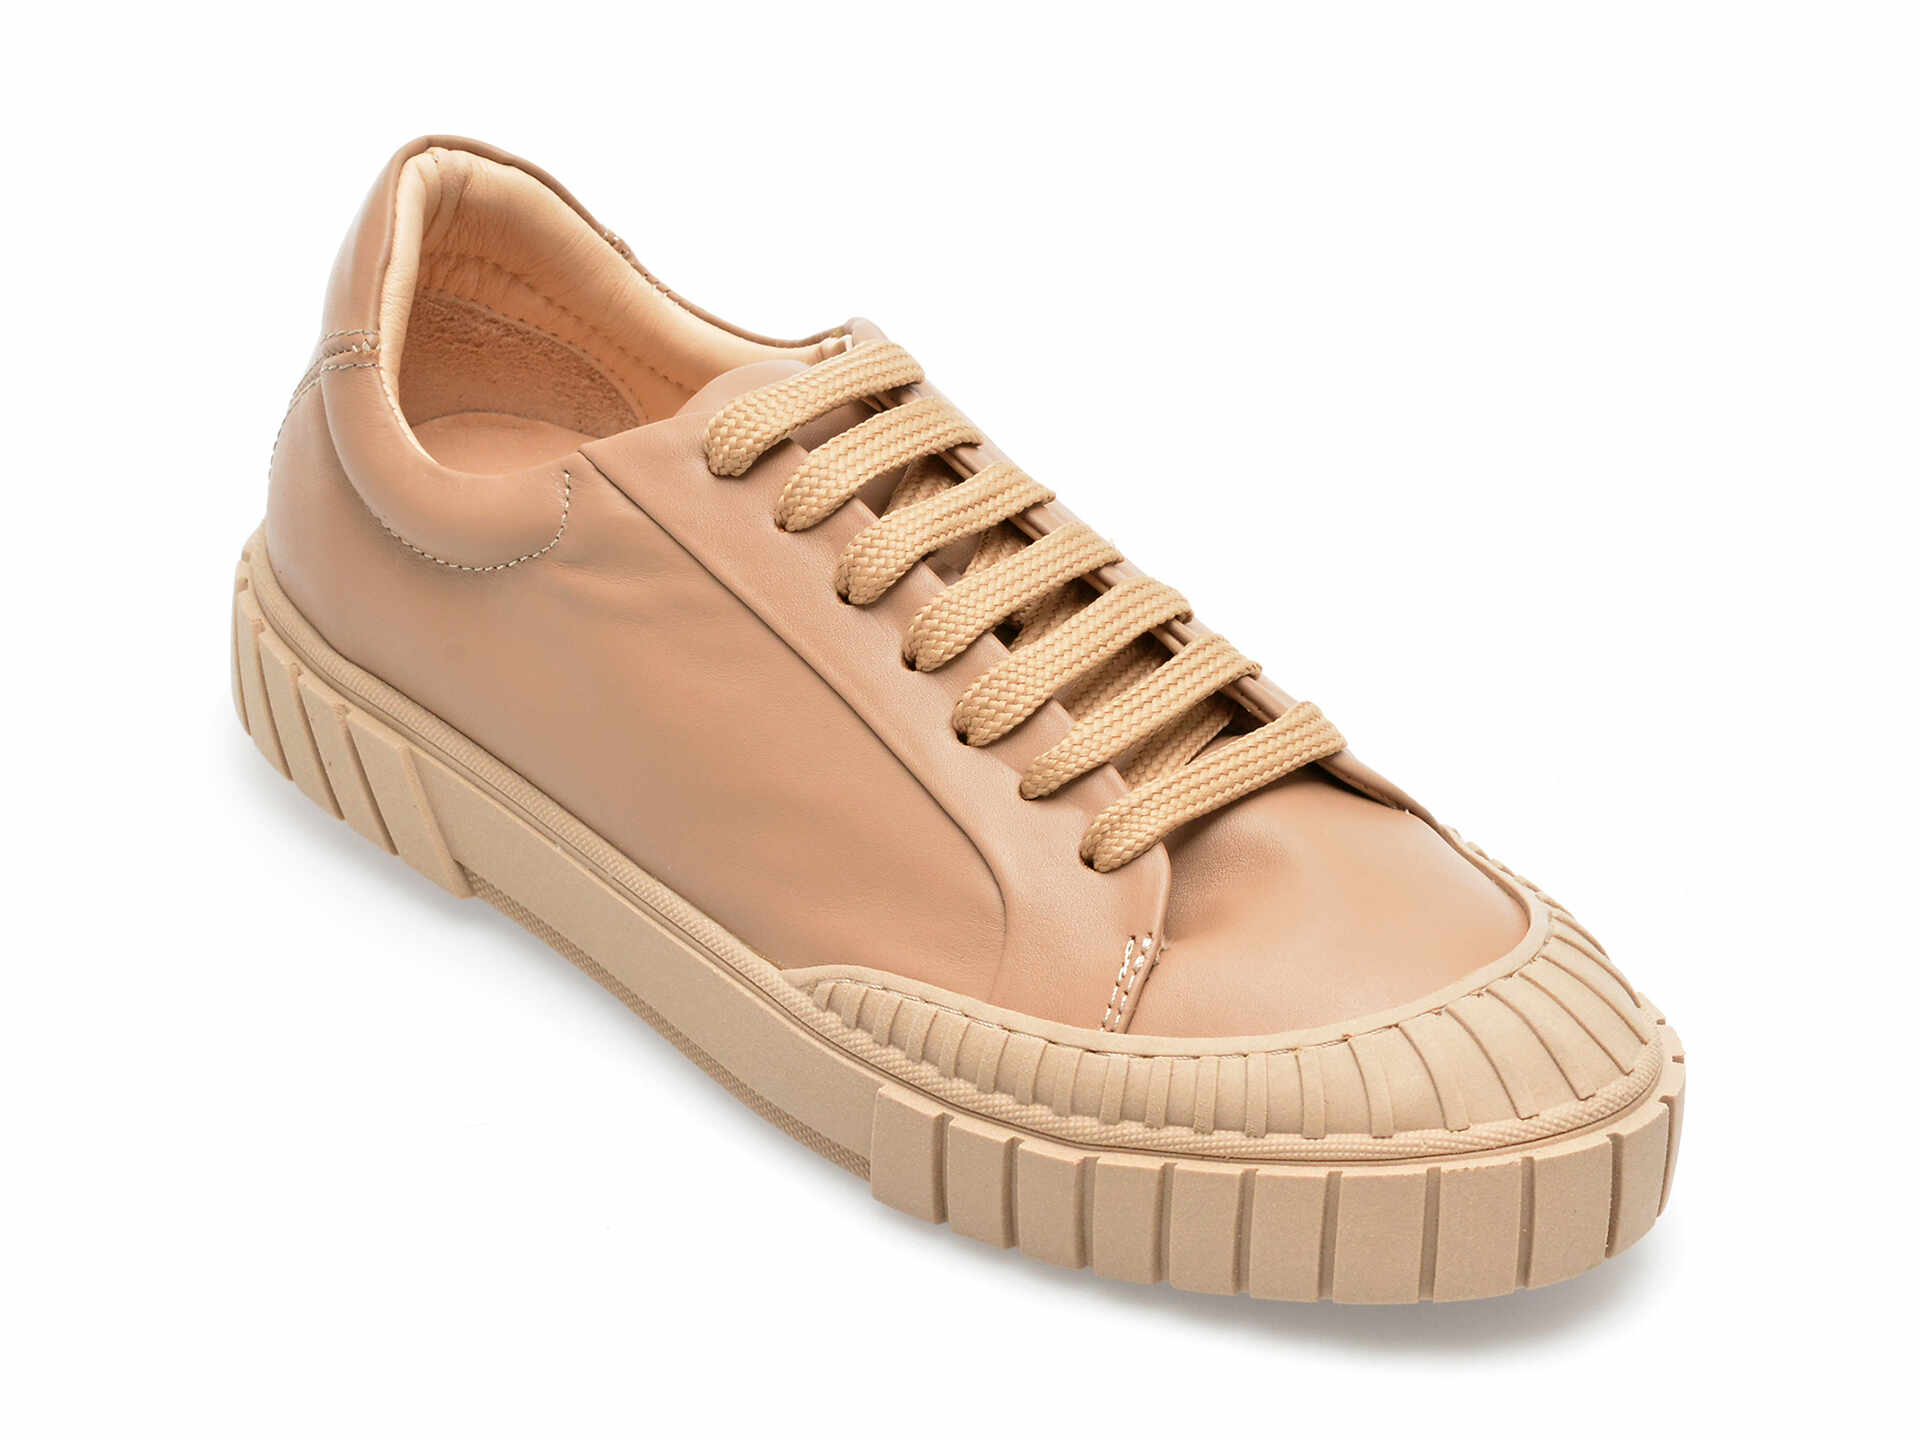 Pantofi GRYXX maro, 1187063, din piele naturala